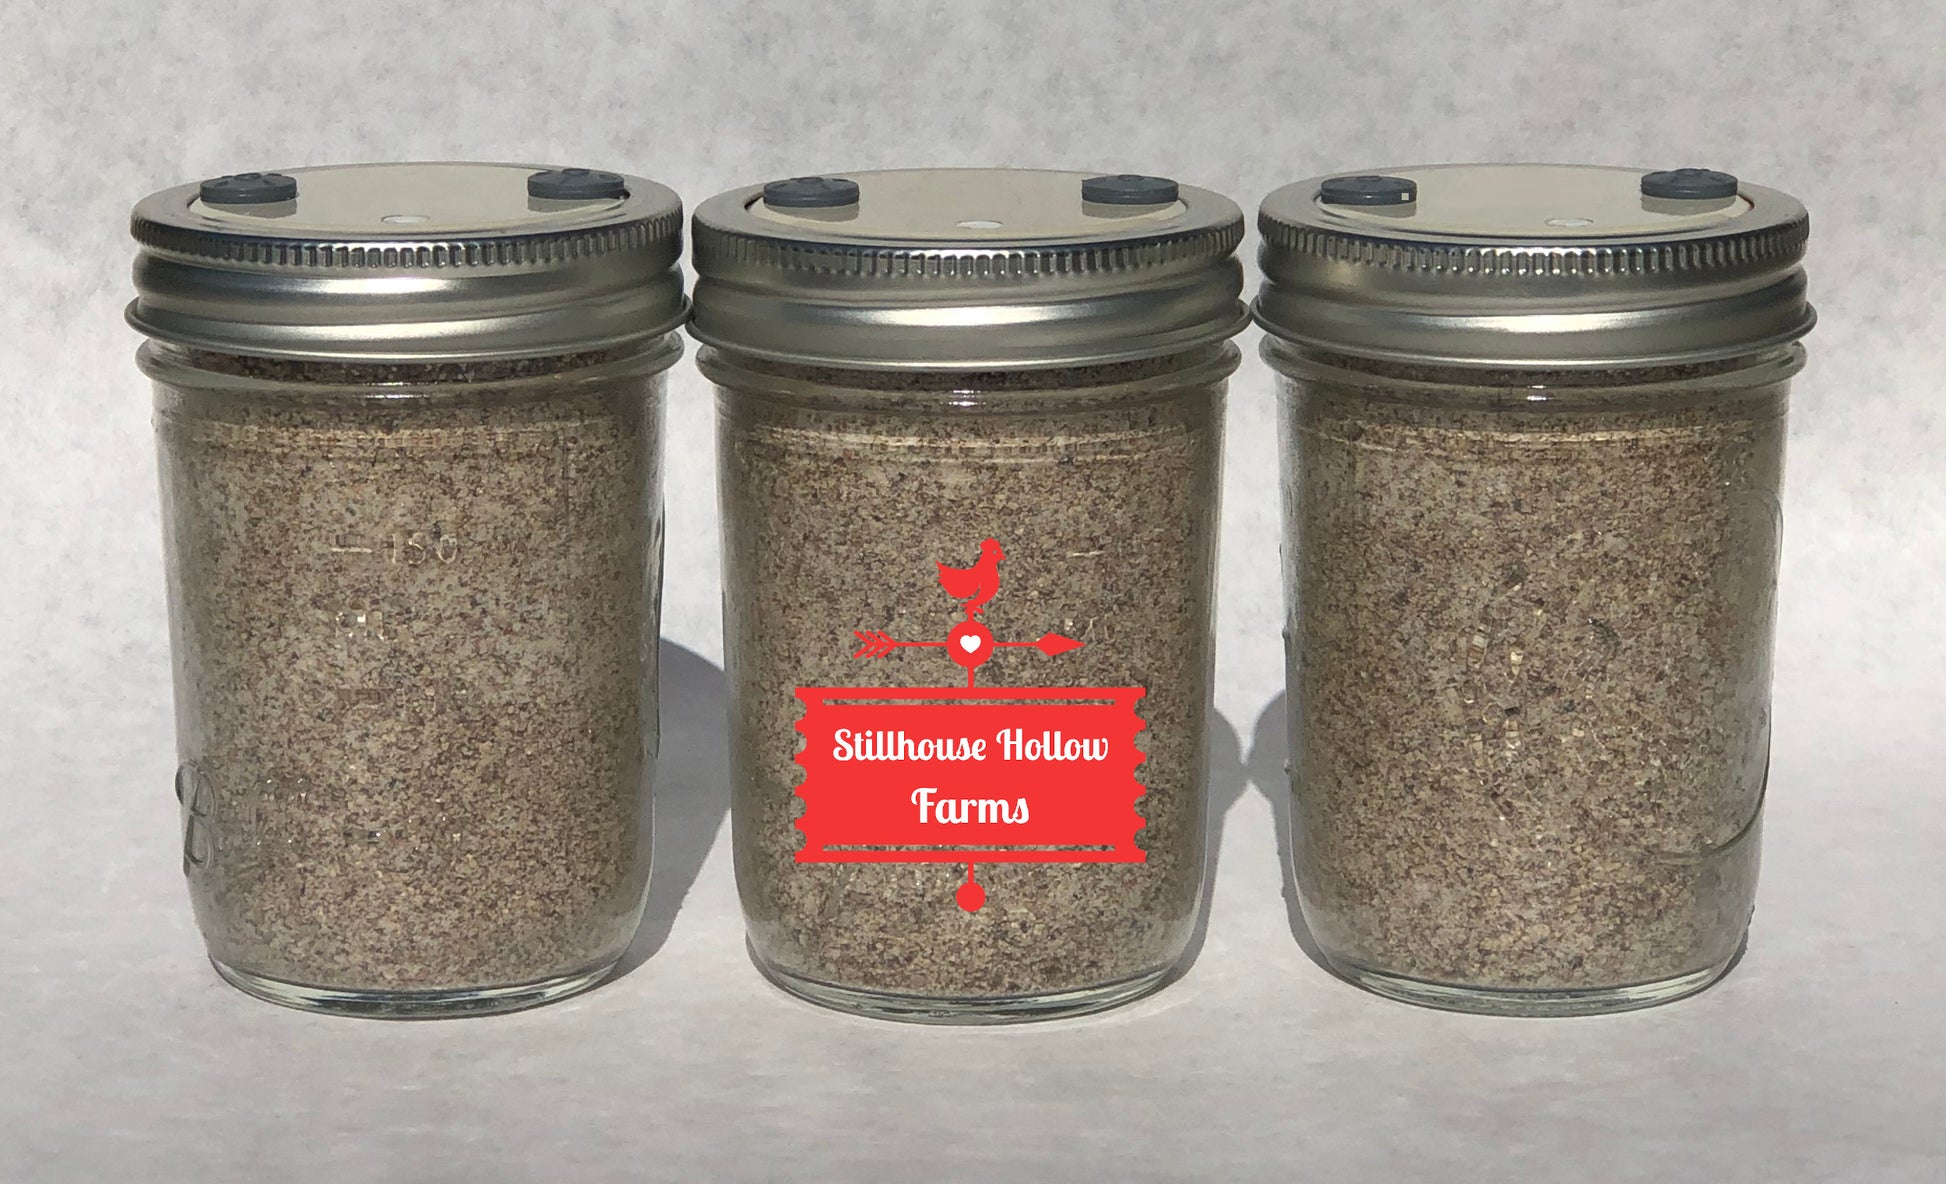 BRF Jars - Organic Mushroom Substrate (12 Ct) – Shroomability